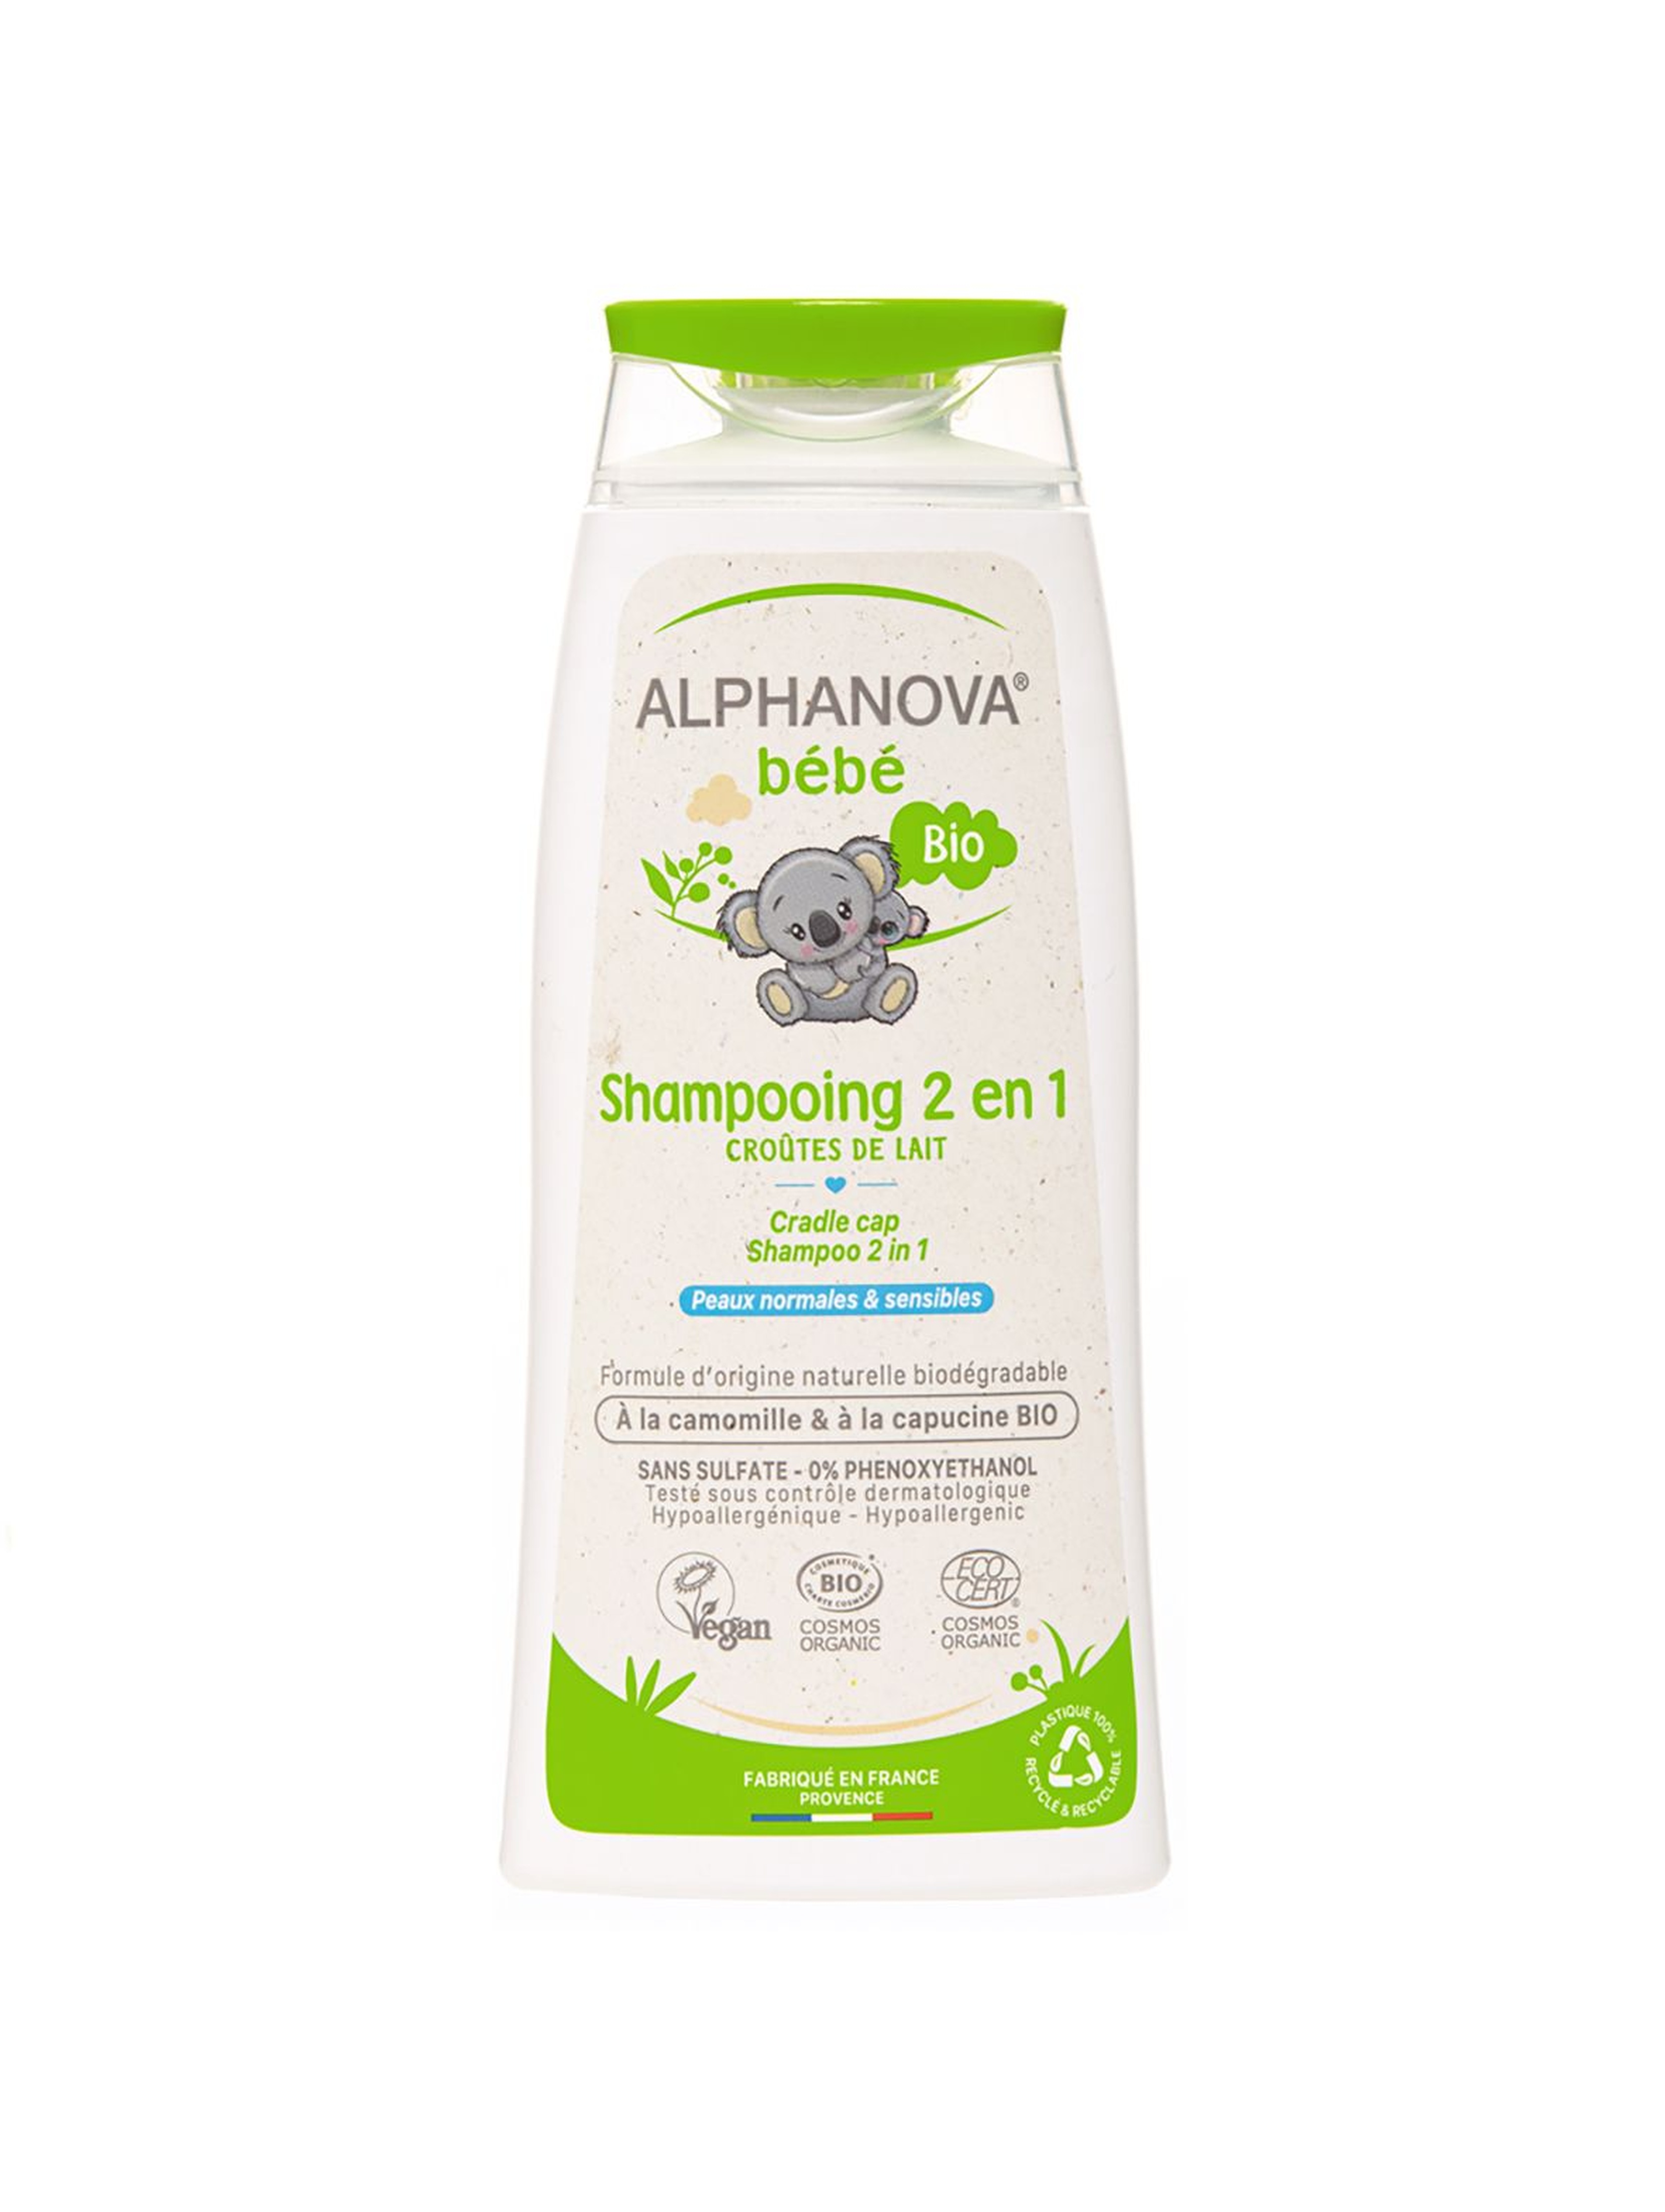 Delikatny szampon do włosów Bio dla dzieci Alphanova - 200ml